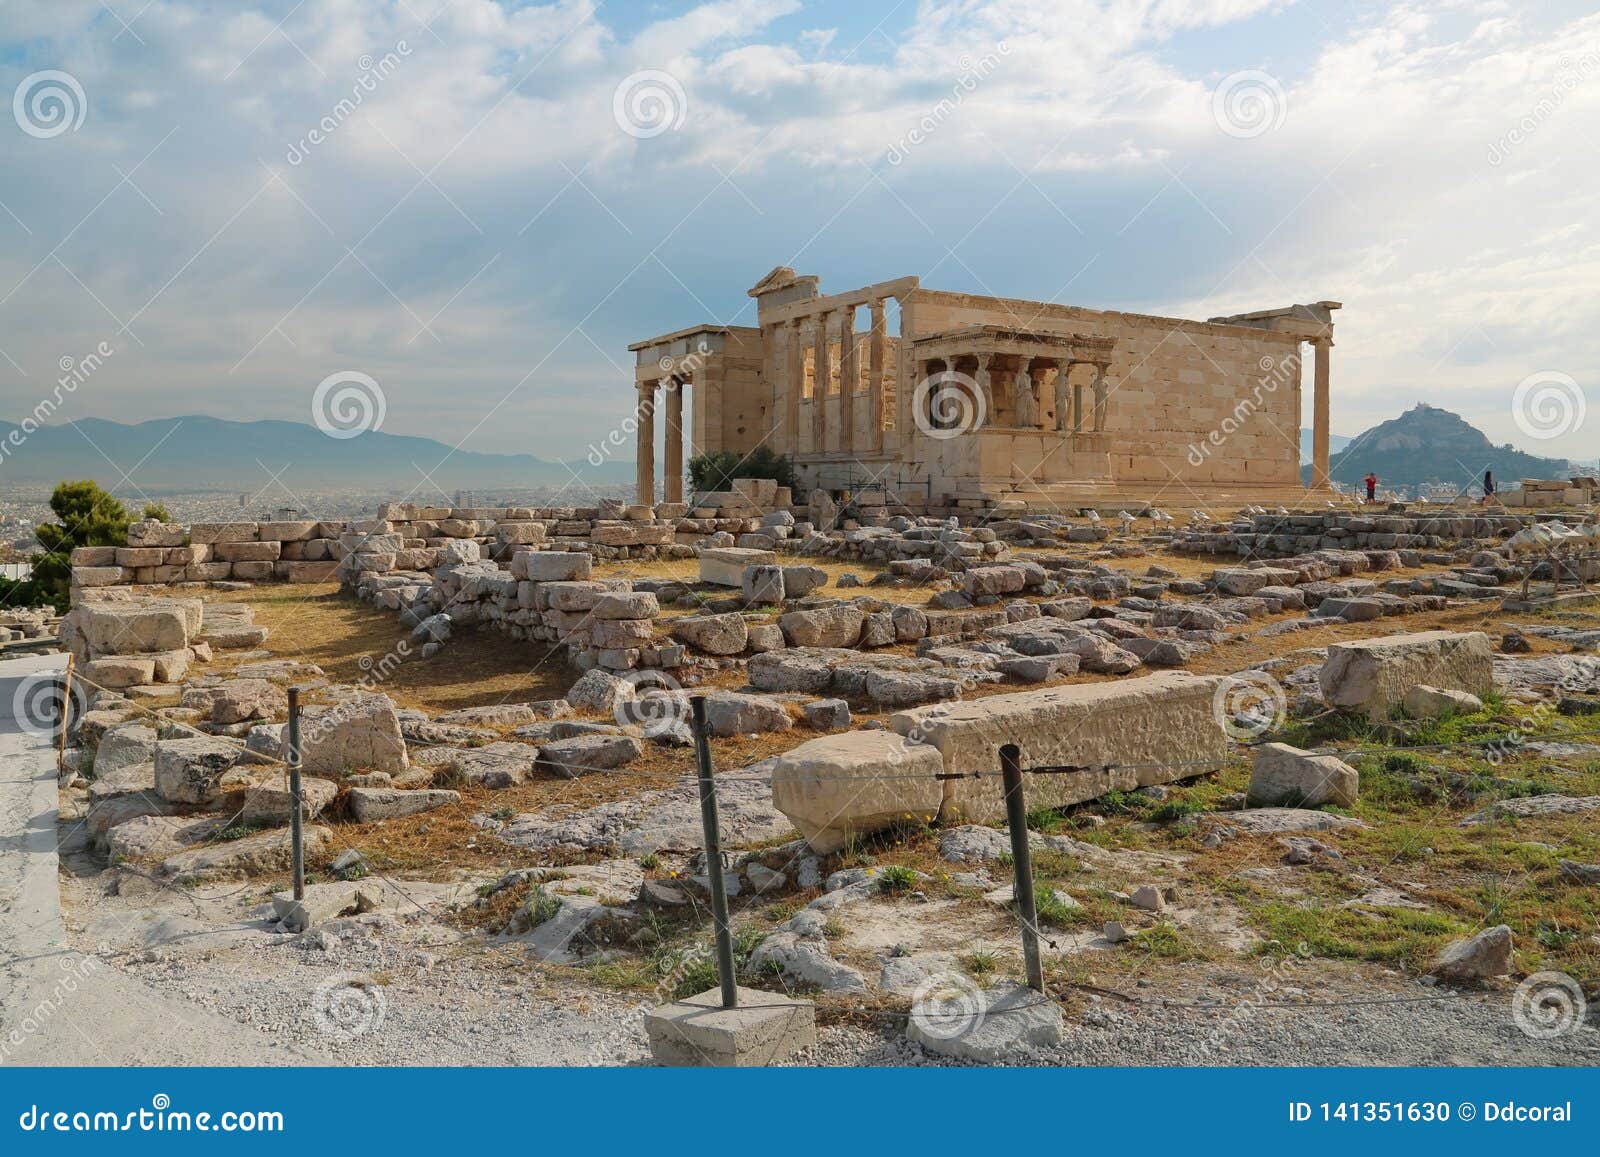 Erechtheion - Antique Temple In Athenian Acropolis, Greece ...
